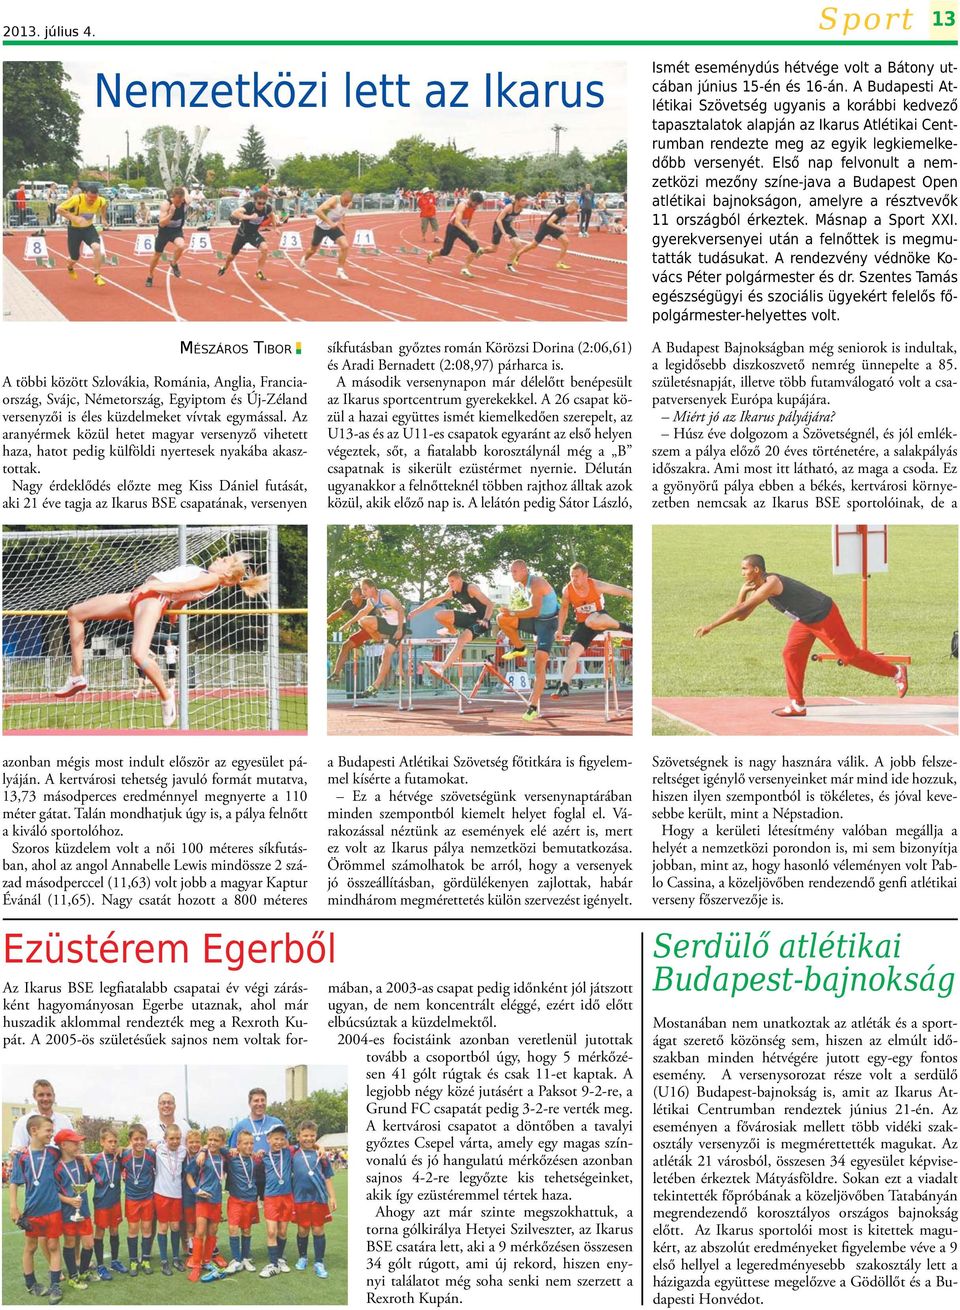 Első nap felvonult a nemzetközi mezőny színe-java a Budapest Open atlétikai bajnokságon, amelyre a résztvevők 11 országból érkeztek. Másnap a Sport XXI.